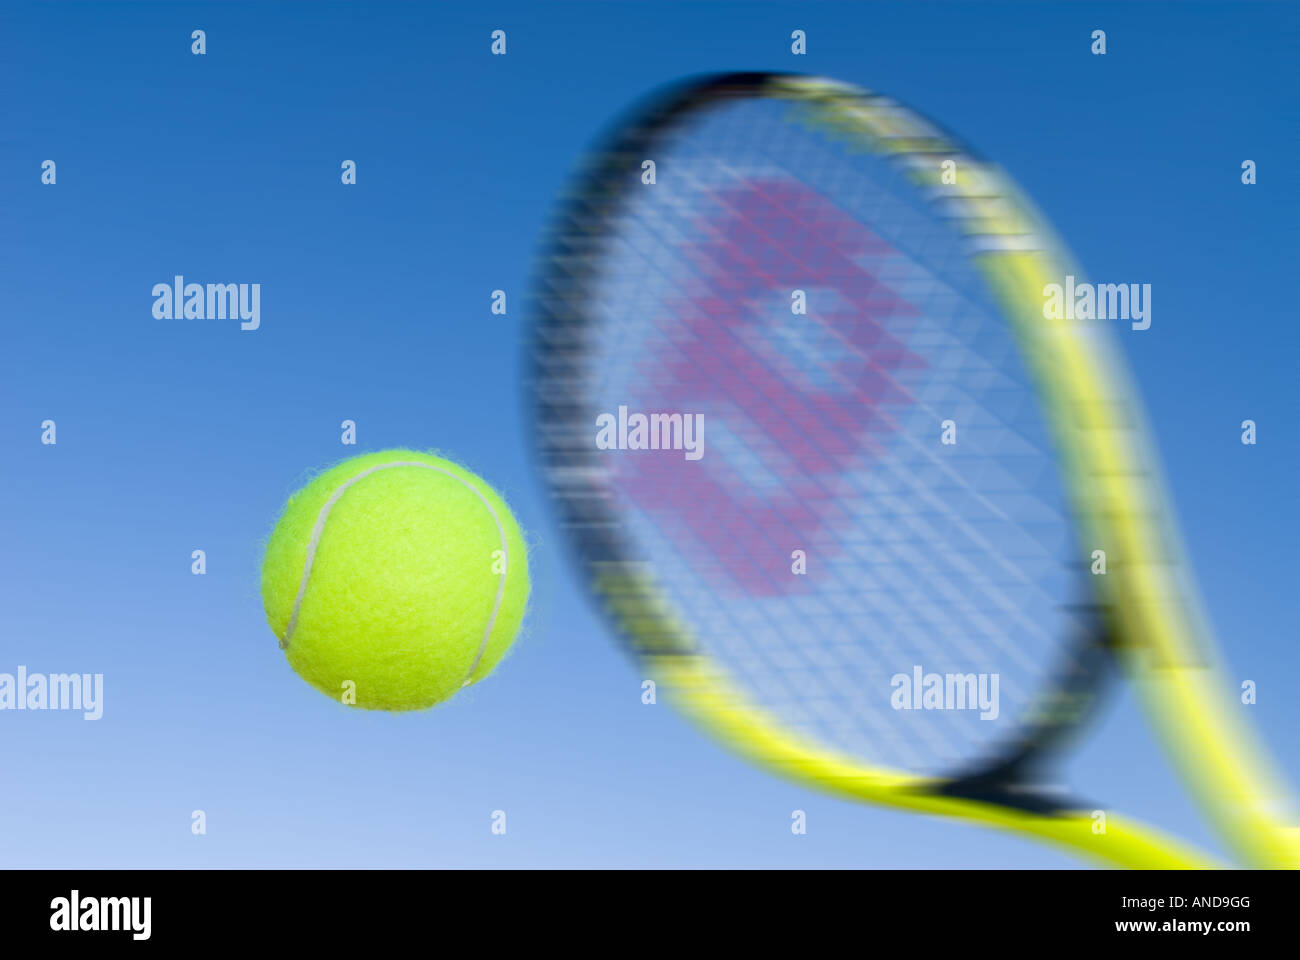 Une image illustrant le concept de la cour y compris tennis balles et raquettes à l'extérieur bleu Banque D'Images